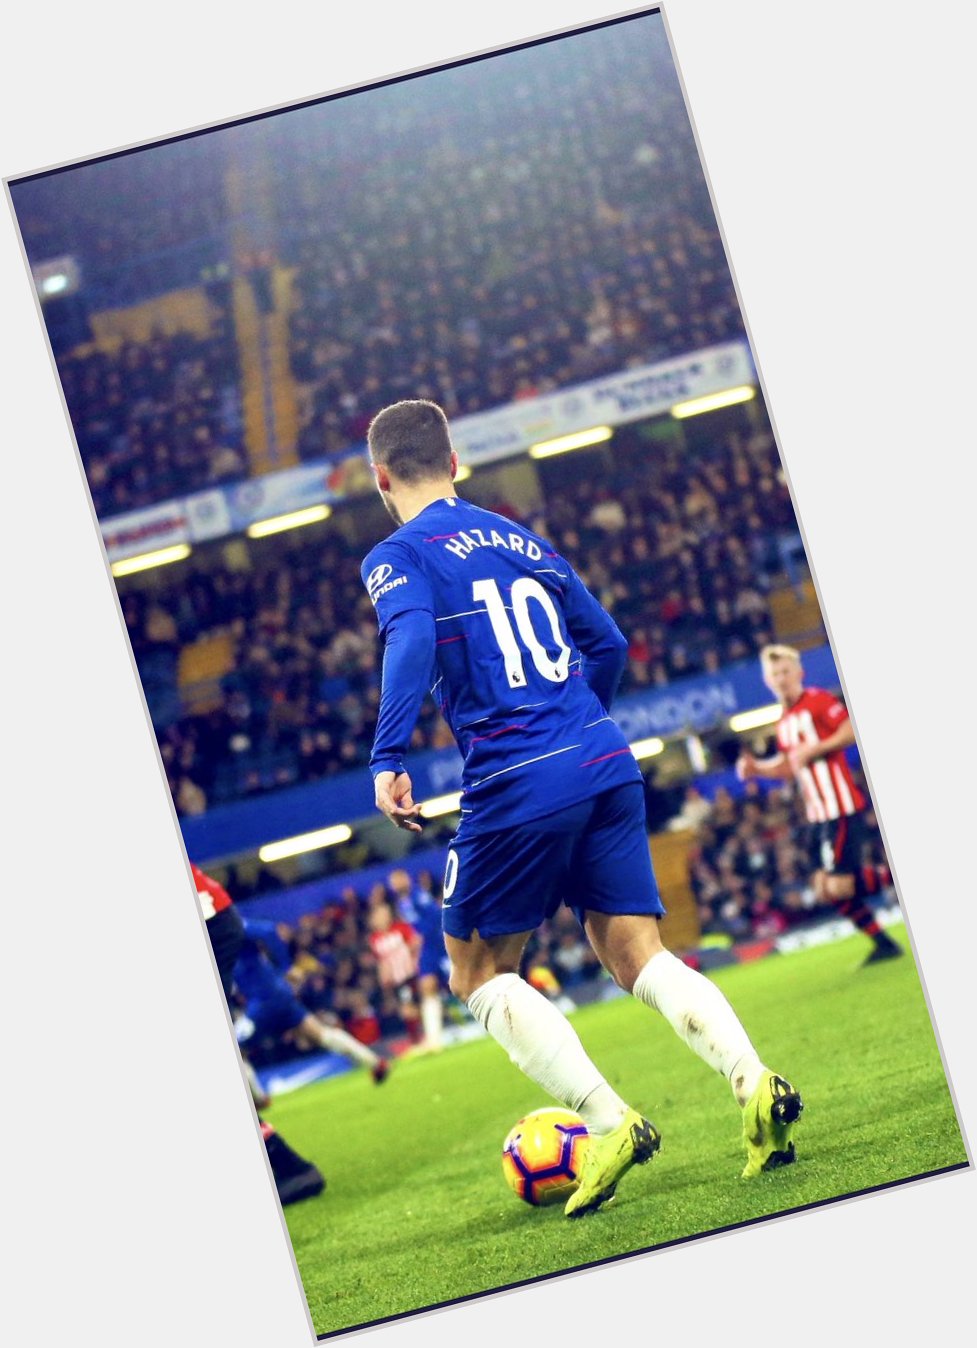 Happy birthday to the best player in the Premier League, Eden Hazard!   